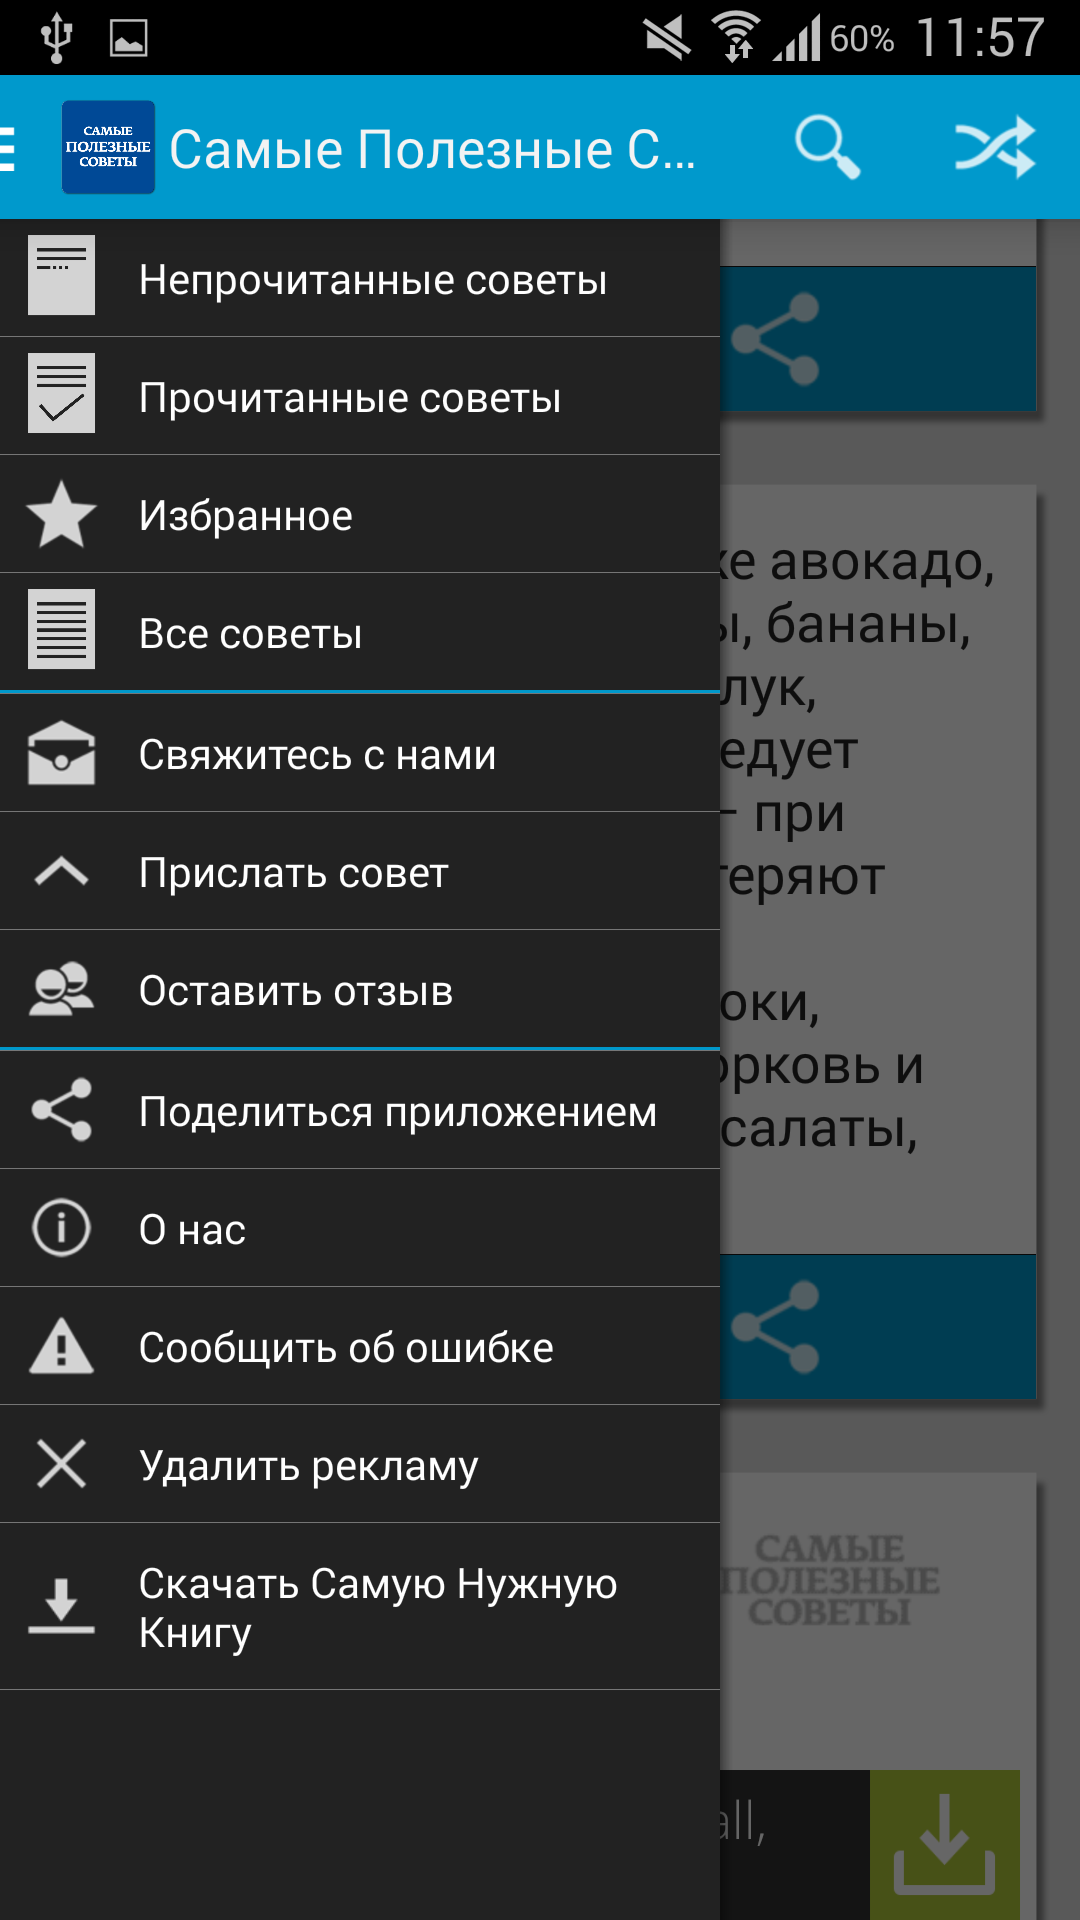 Android application Самые Полезные Советы screenshort